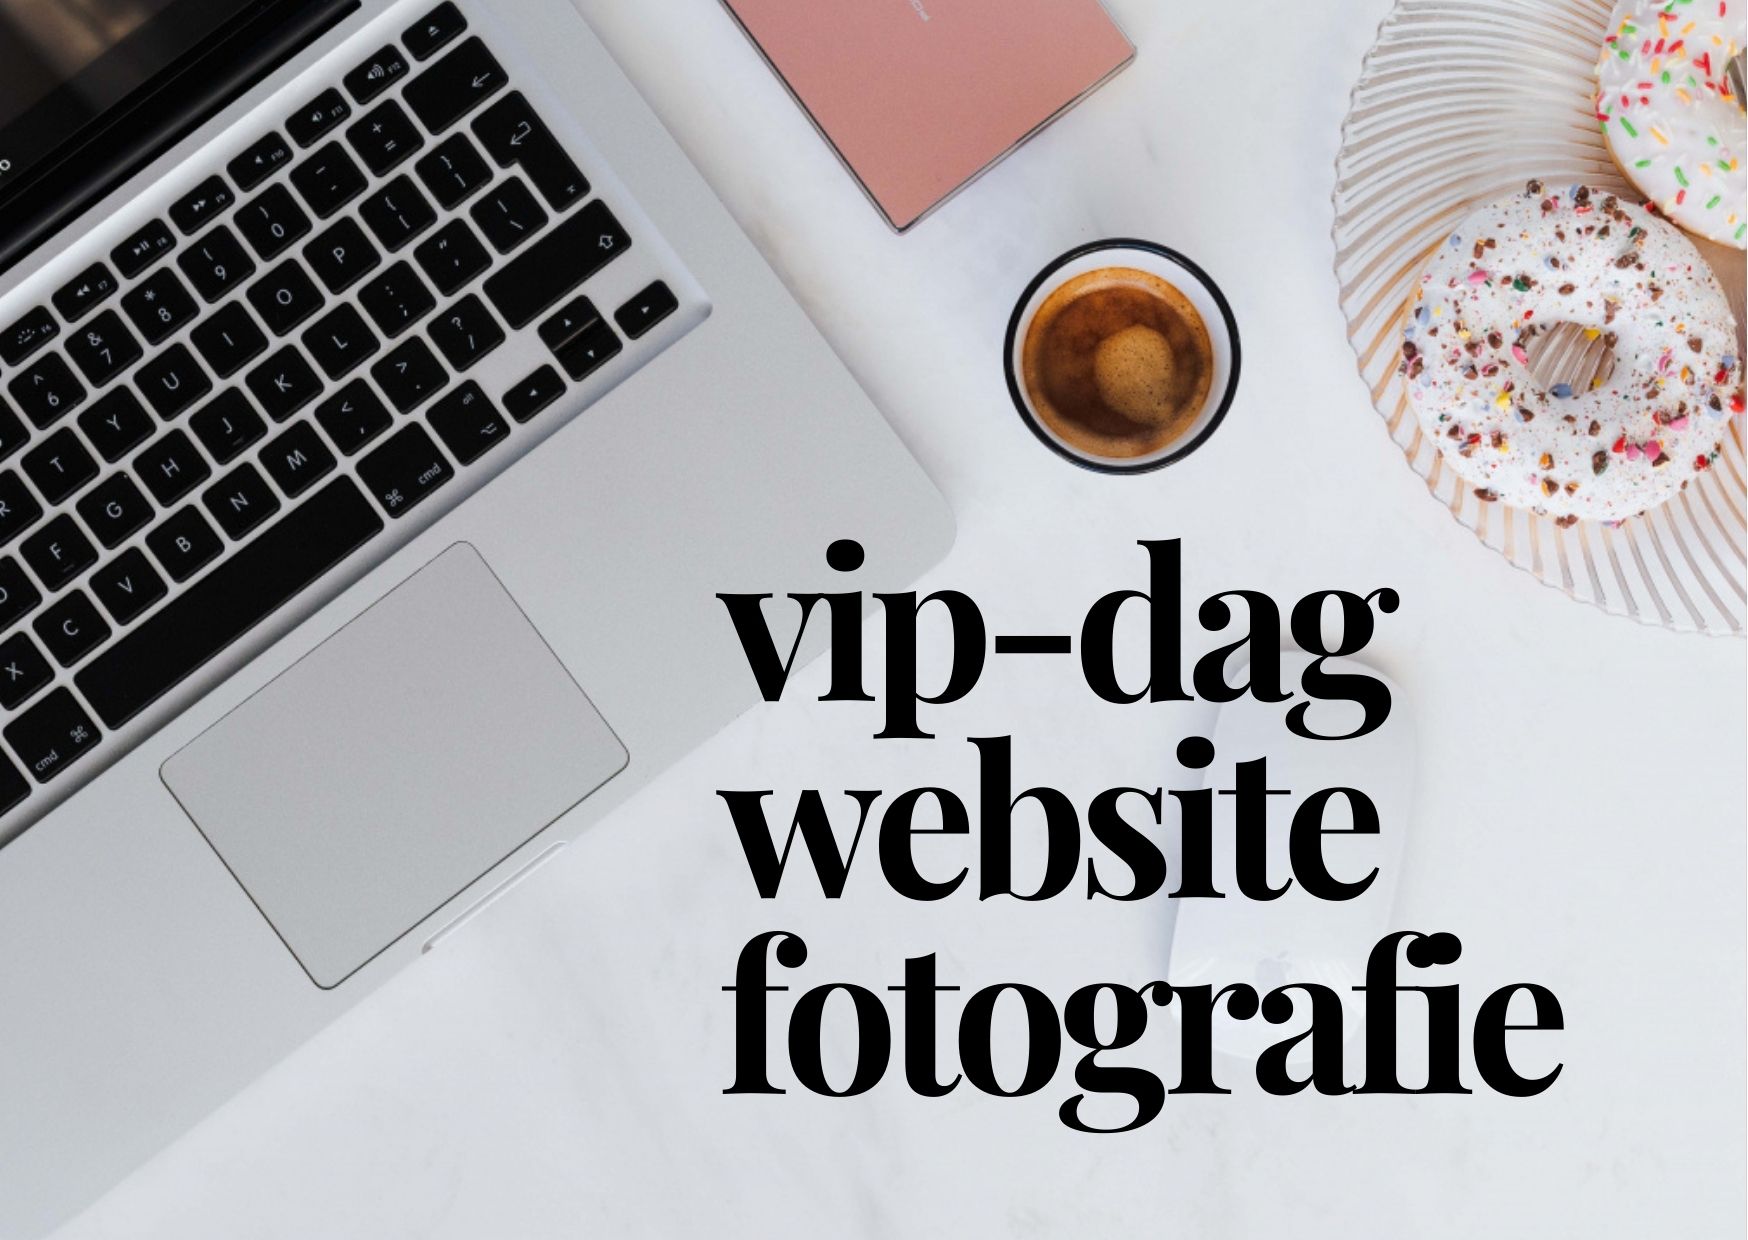 VIP-Dag Website & Fotografie